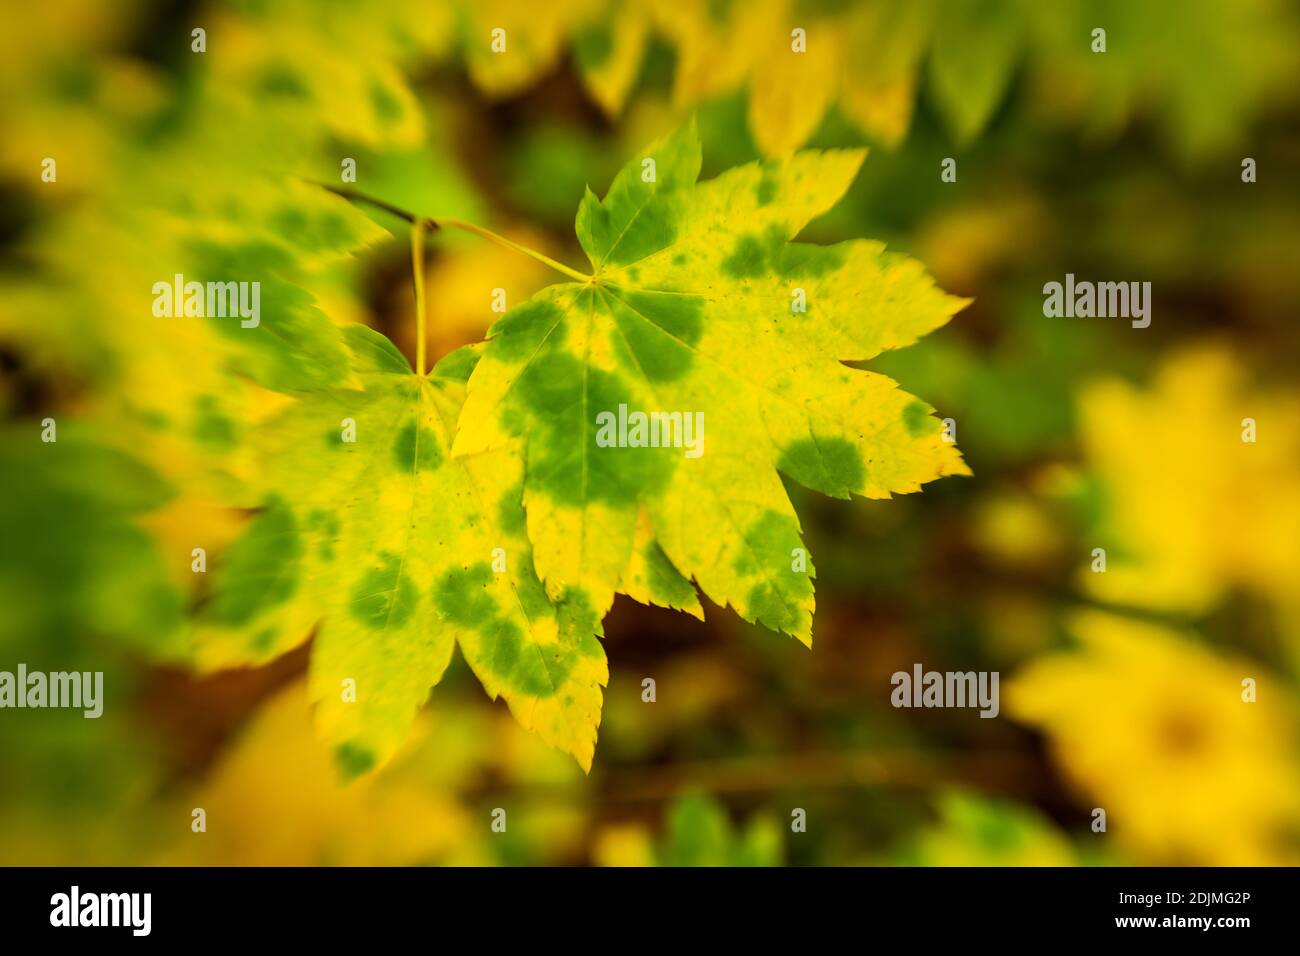 WA18742-00...WASHINGTON - Blätter, die sich in Herbstfarben verwandeln fotografiert mit einem Lensbaby Sweet Spot 50. Stockfoto